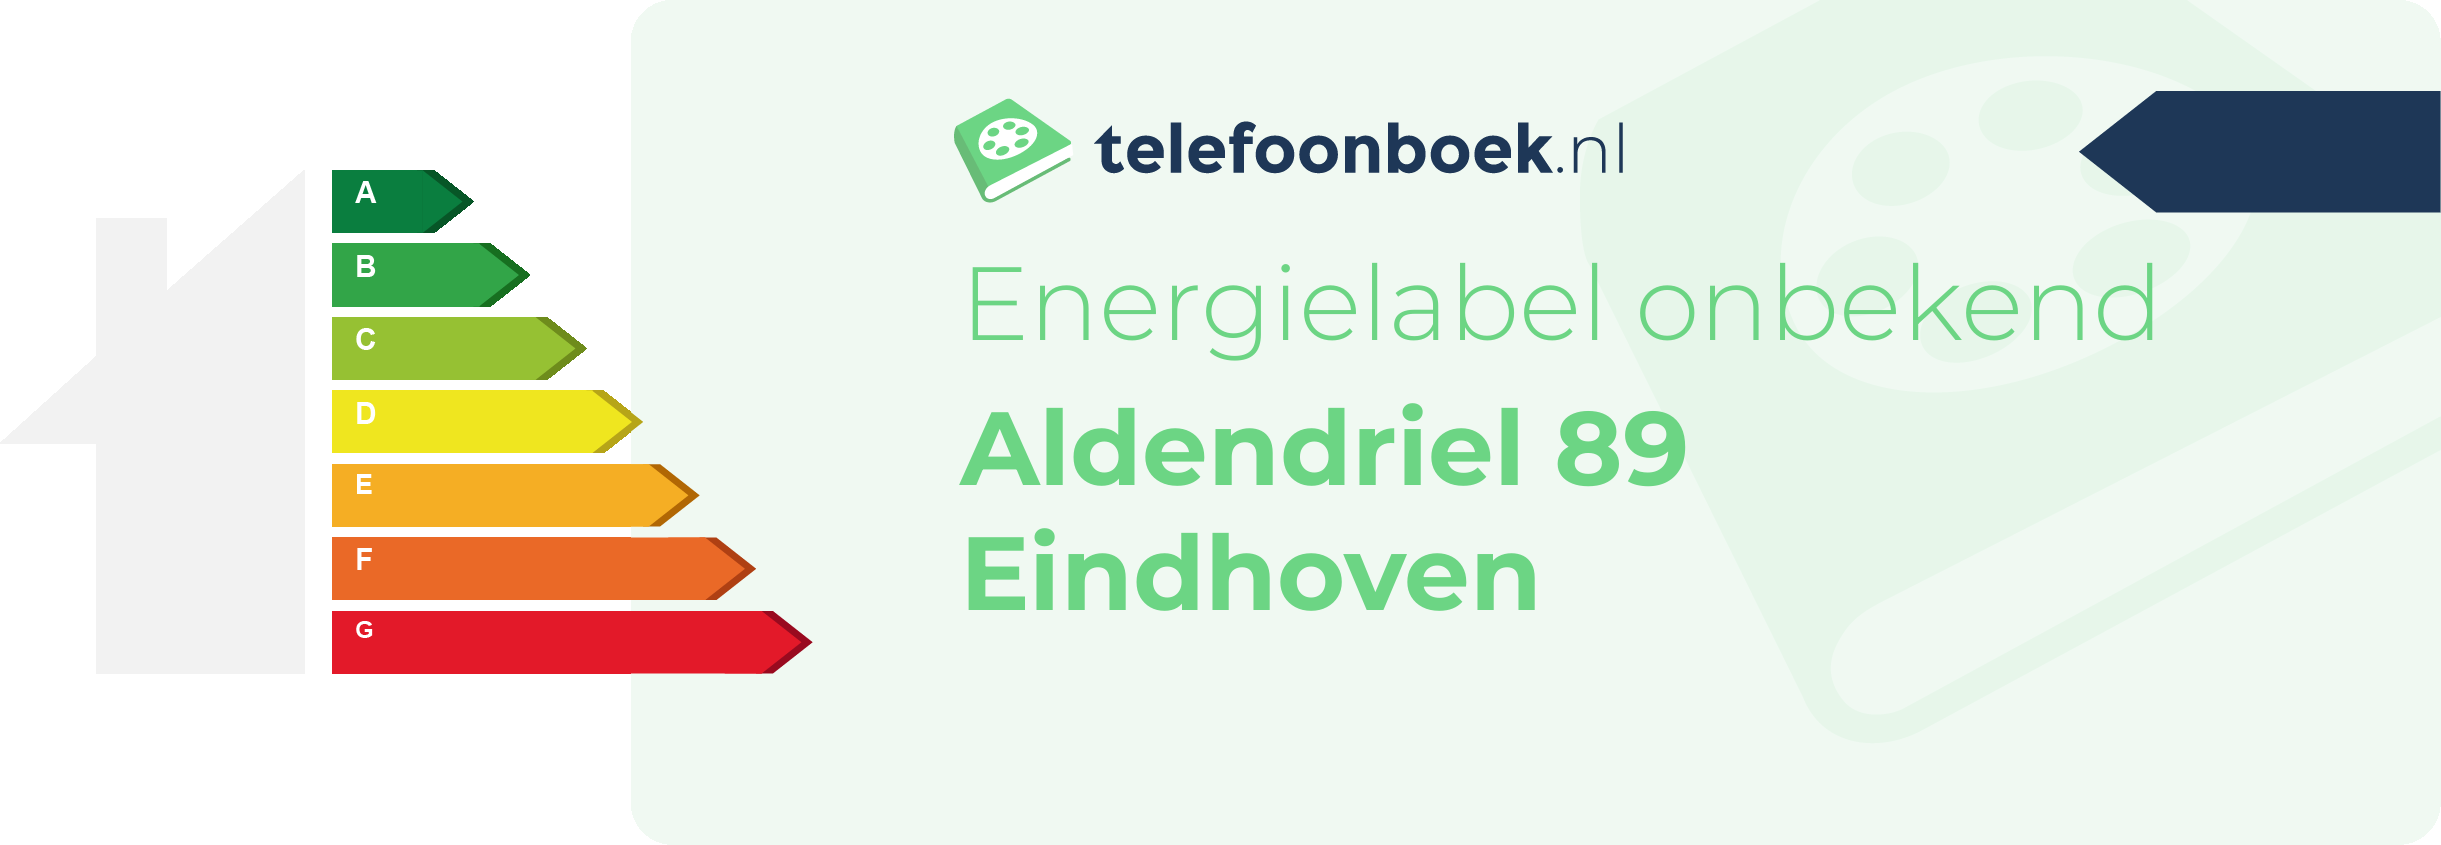 Energielabel Aldendriel 89 Eindhoven